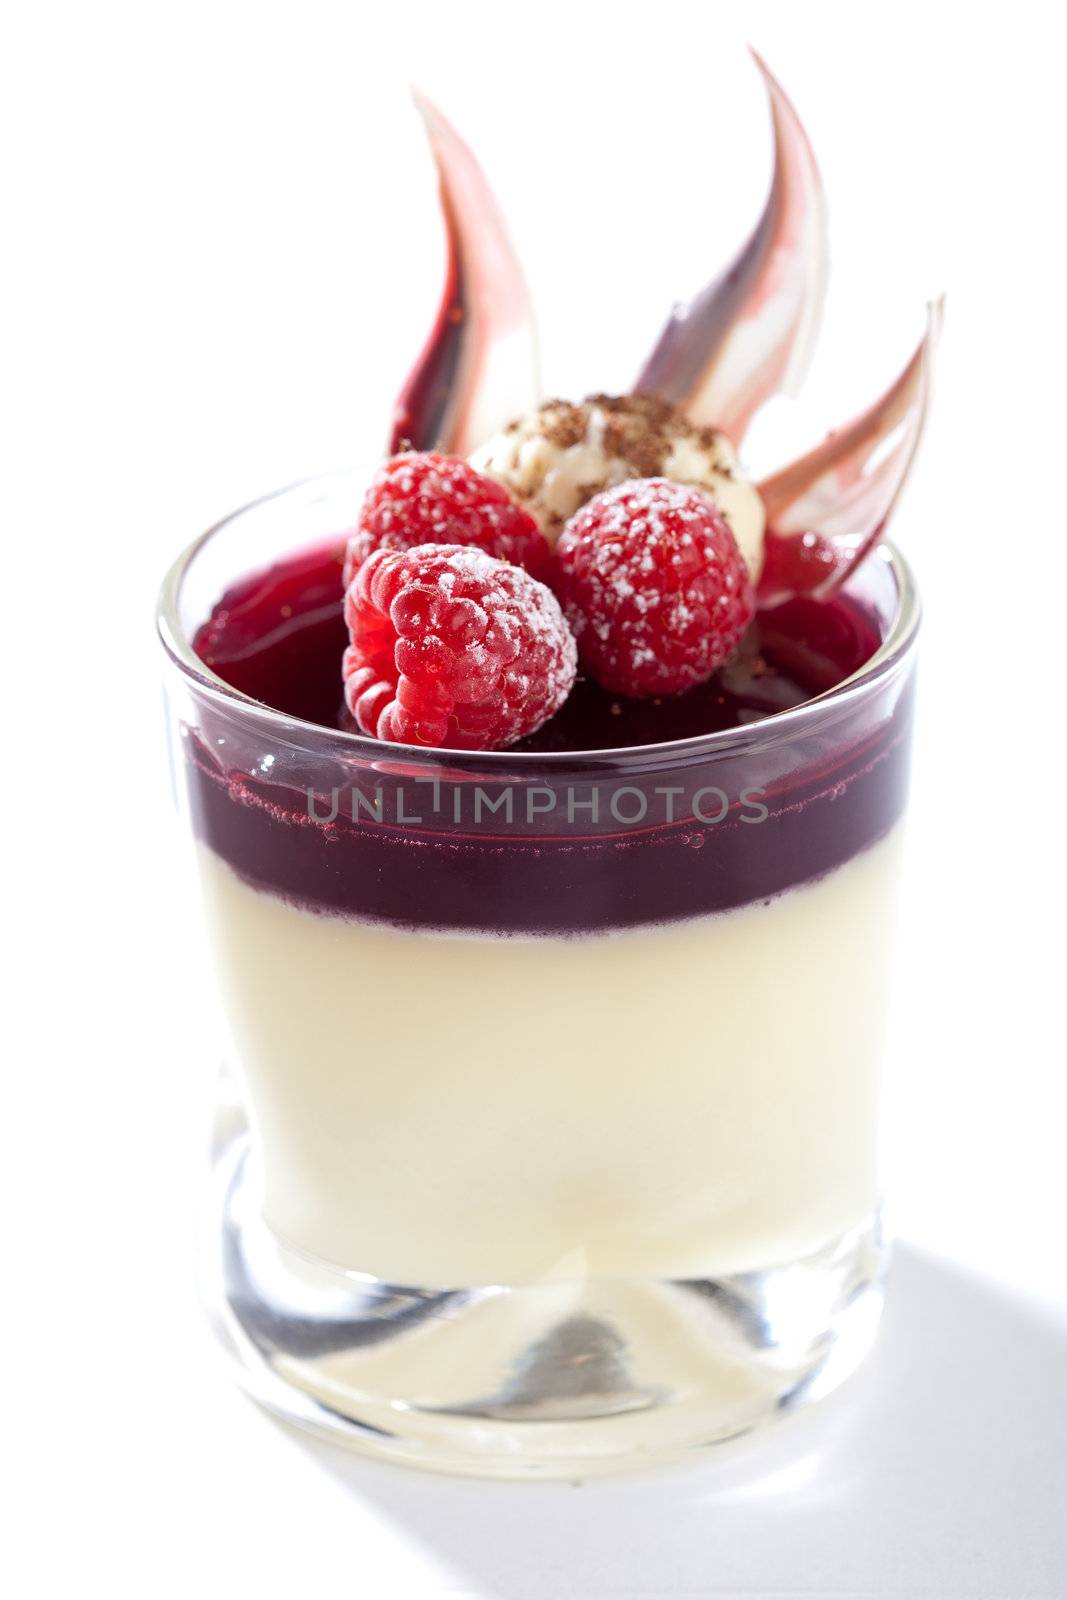 Delicious creamy dessert by Fotosmurf